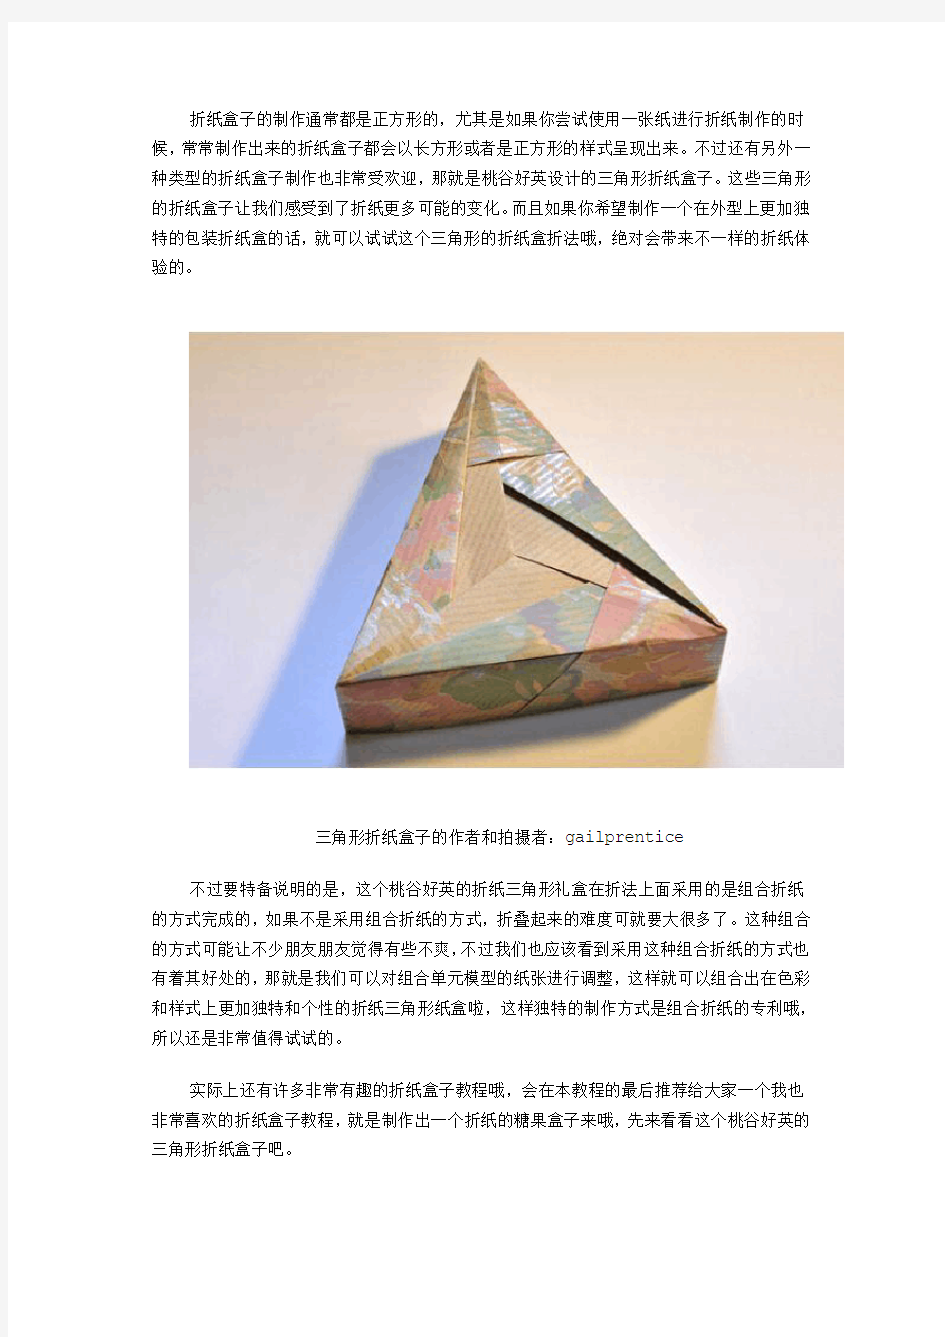 桃谷好英三角形折纸盒子图纸教程